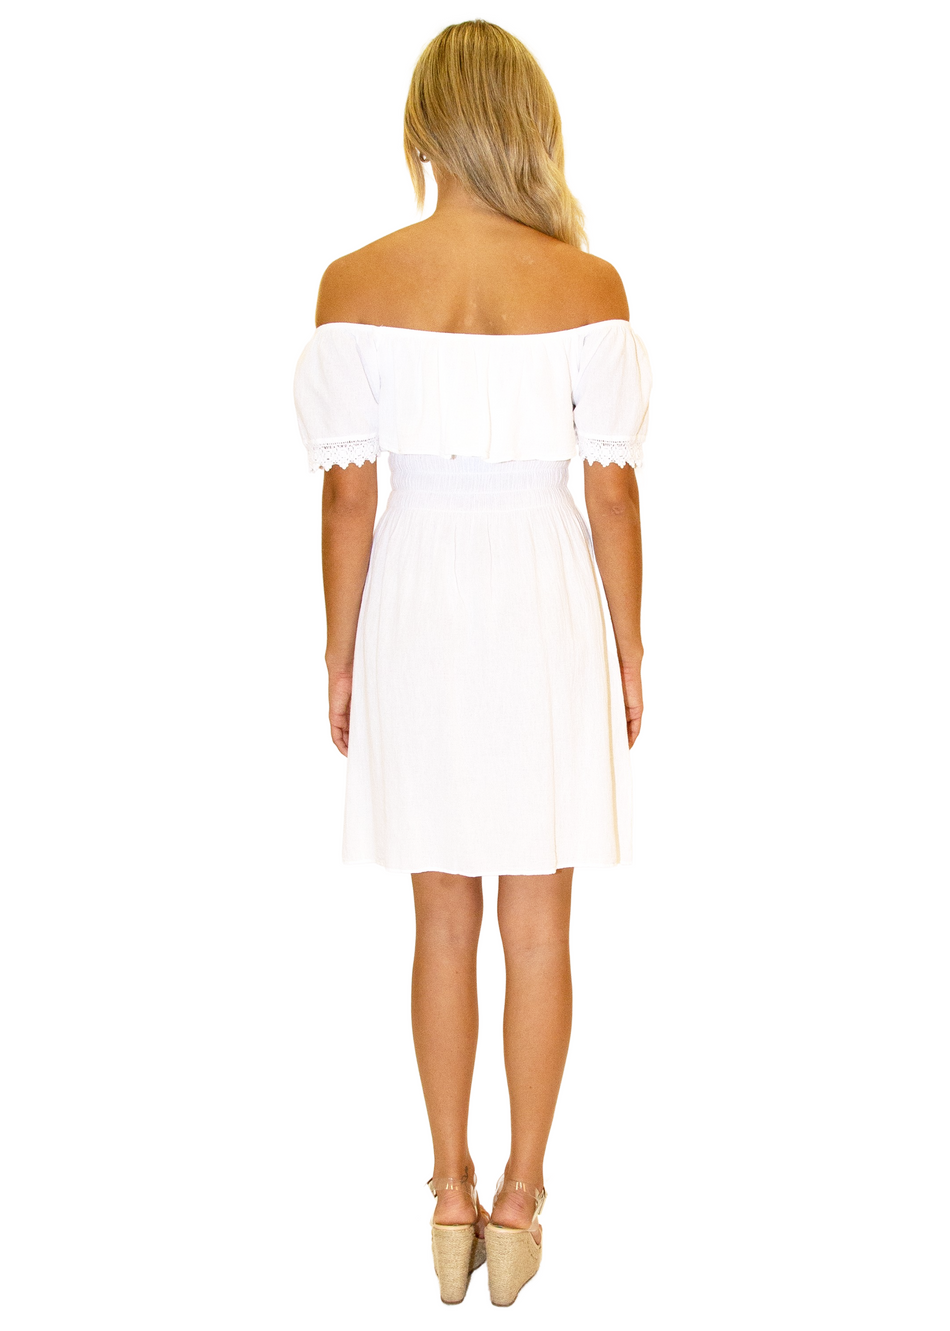 NW1066 - White Cotton Dress